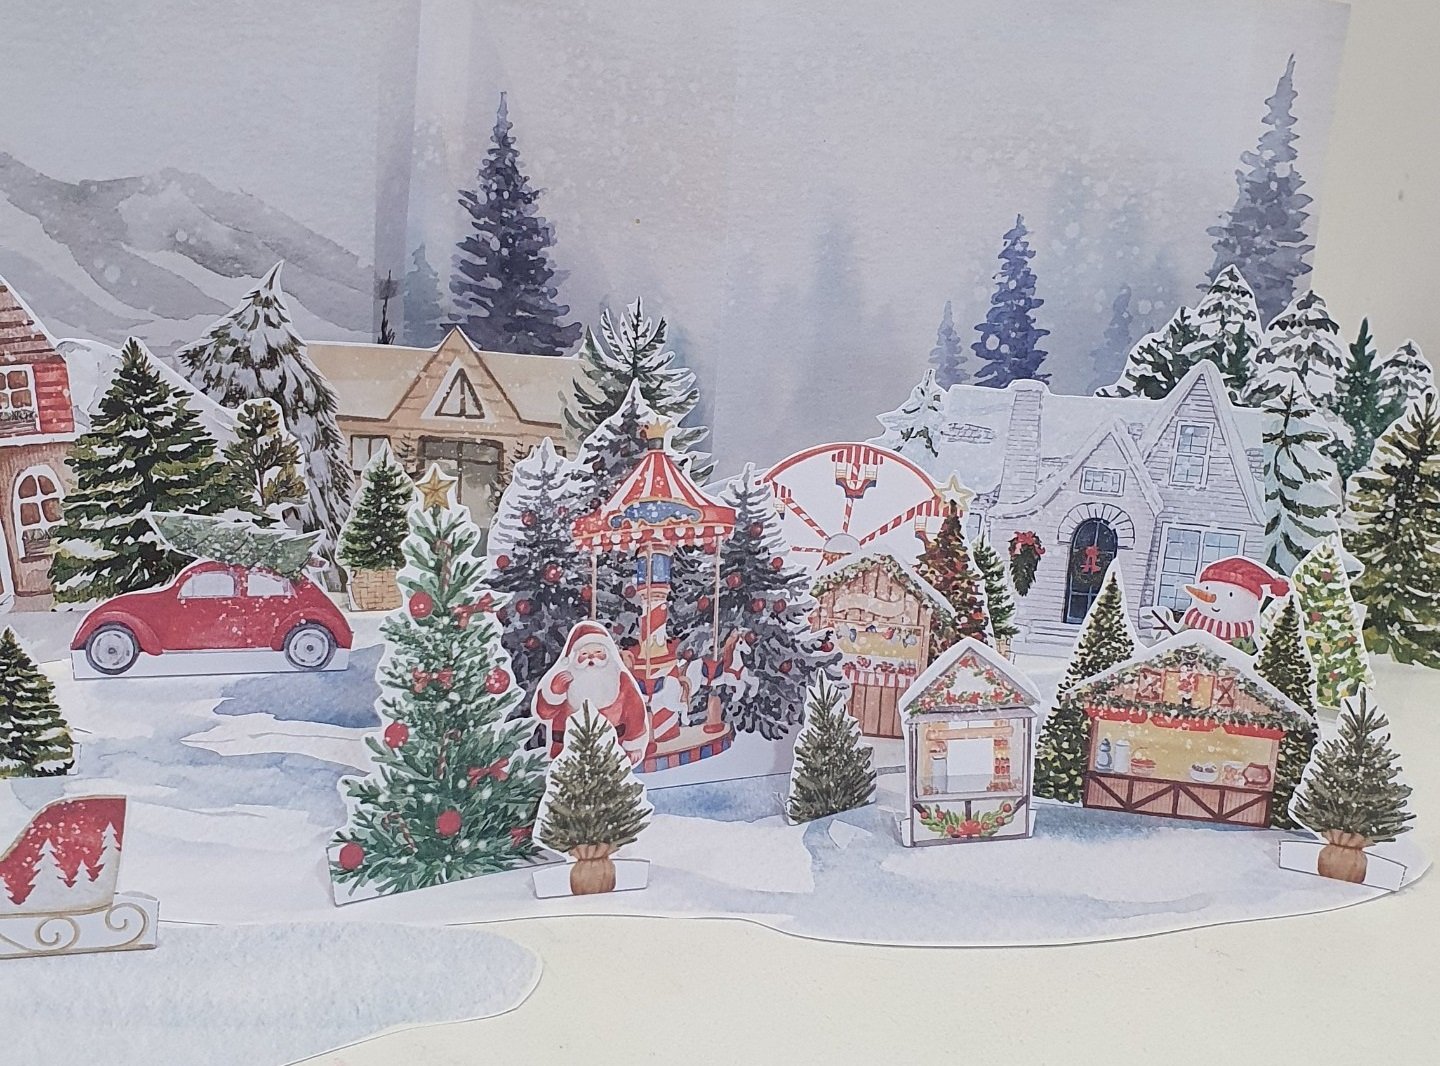 How to build a Christmas Village Mountain: DIY Mountain Diorama 